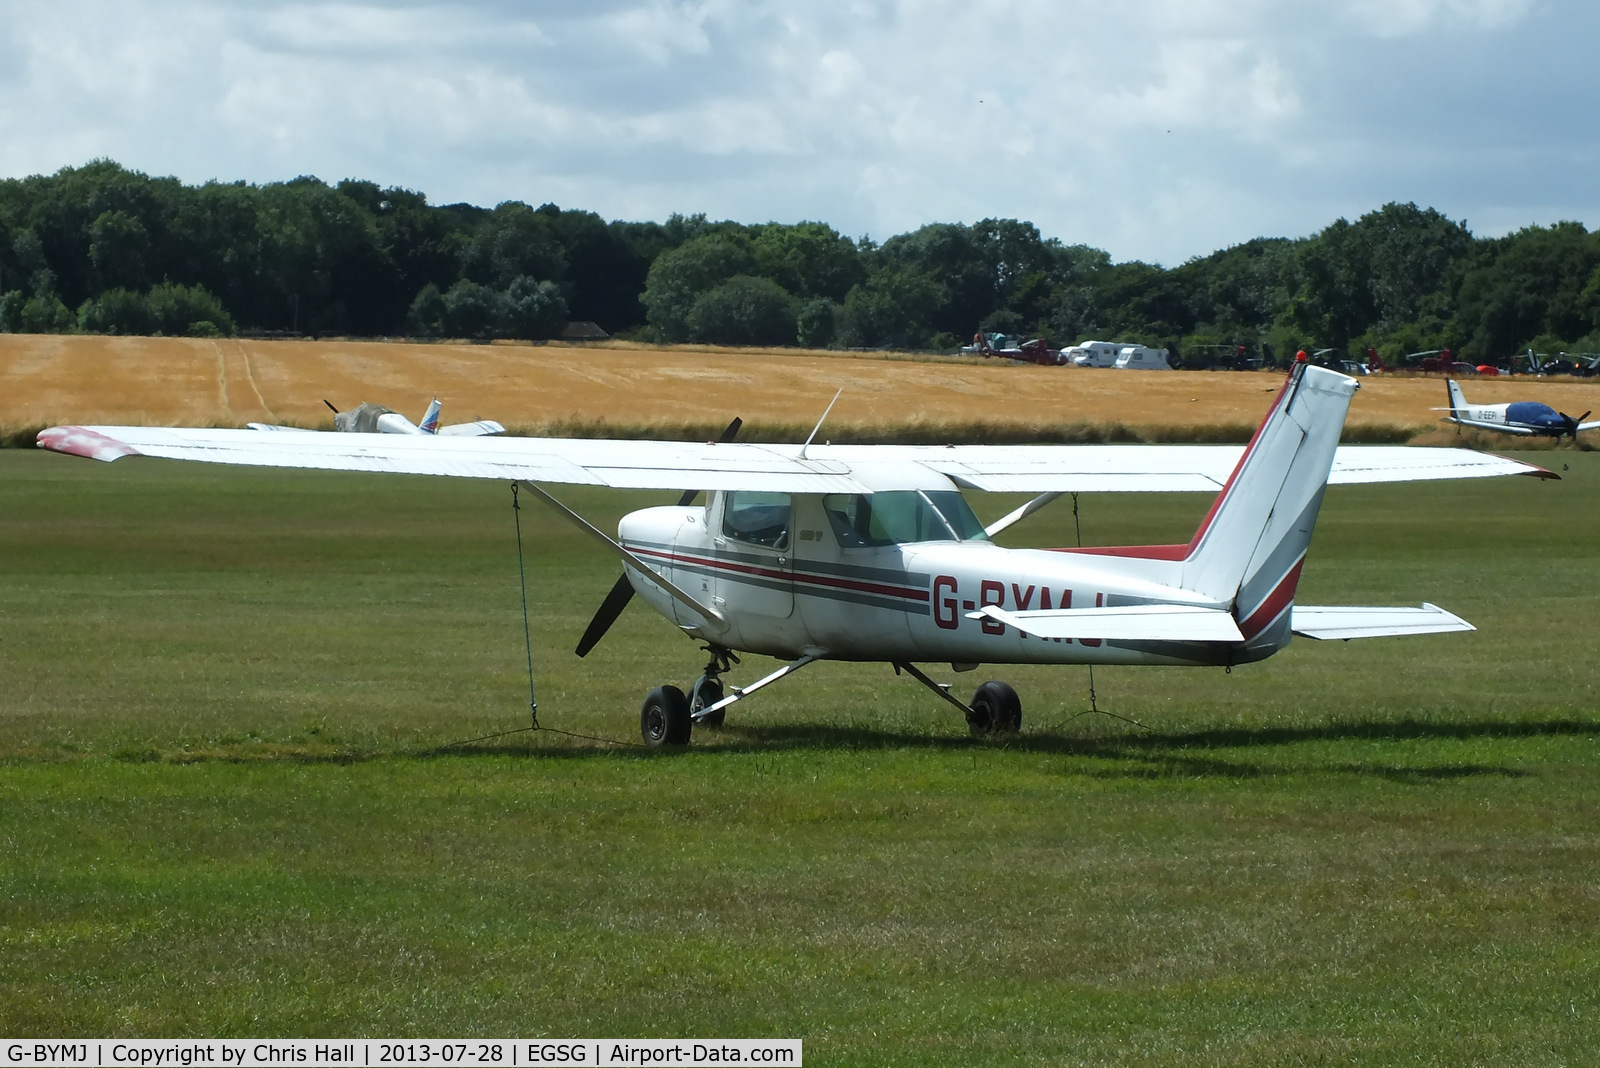 G-BYMJ, 1982 Cessna 152 C/N 152-85564, Stapleford Flying Club